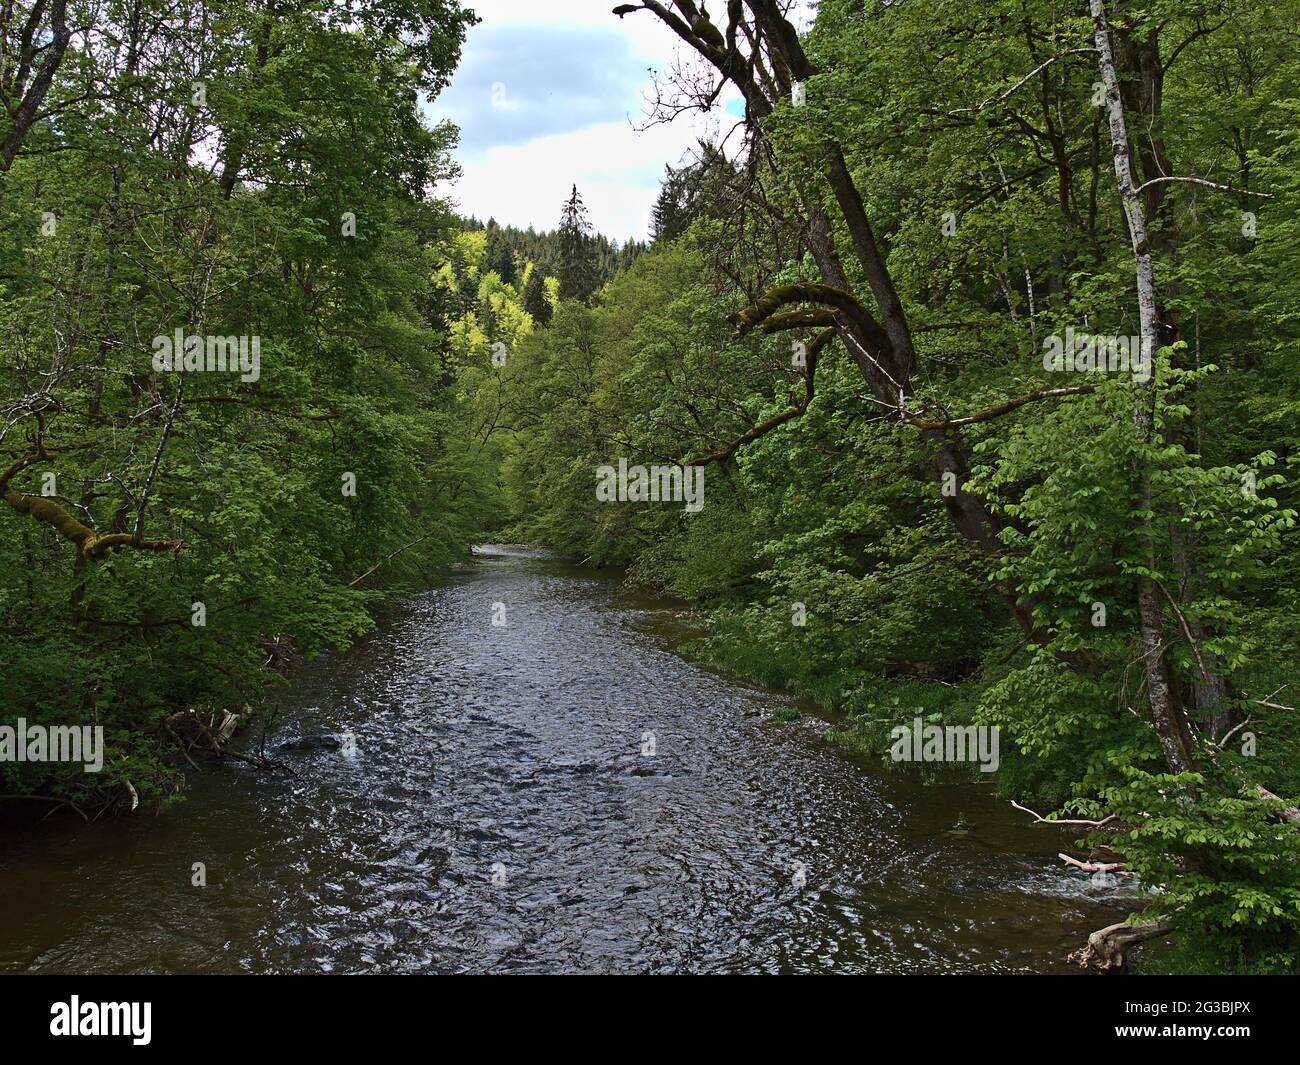 Vista dell'idilliaca Gola di Wutach ('Wutachschlucht'), una popolare destinazione turistica nella Foresta Nera, in Germania, con il fiume che scorre circondato da una fitta foresta. Foto Stock